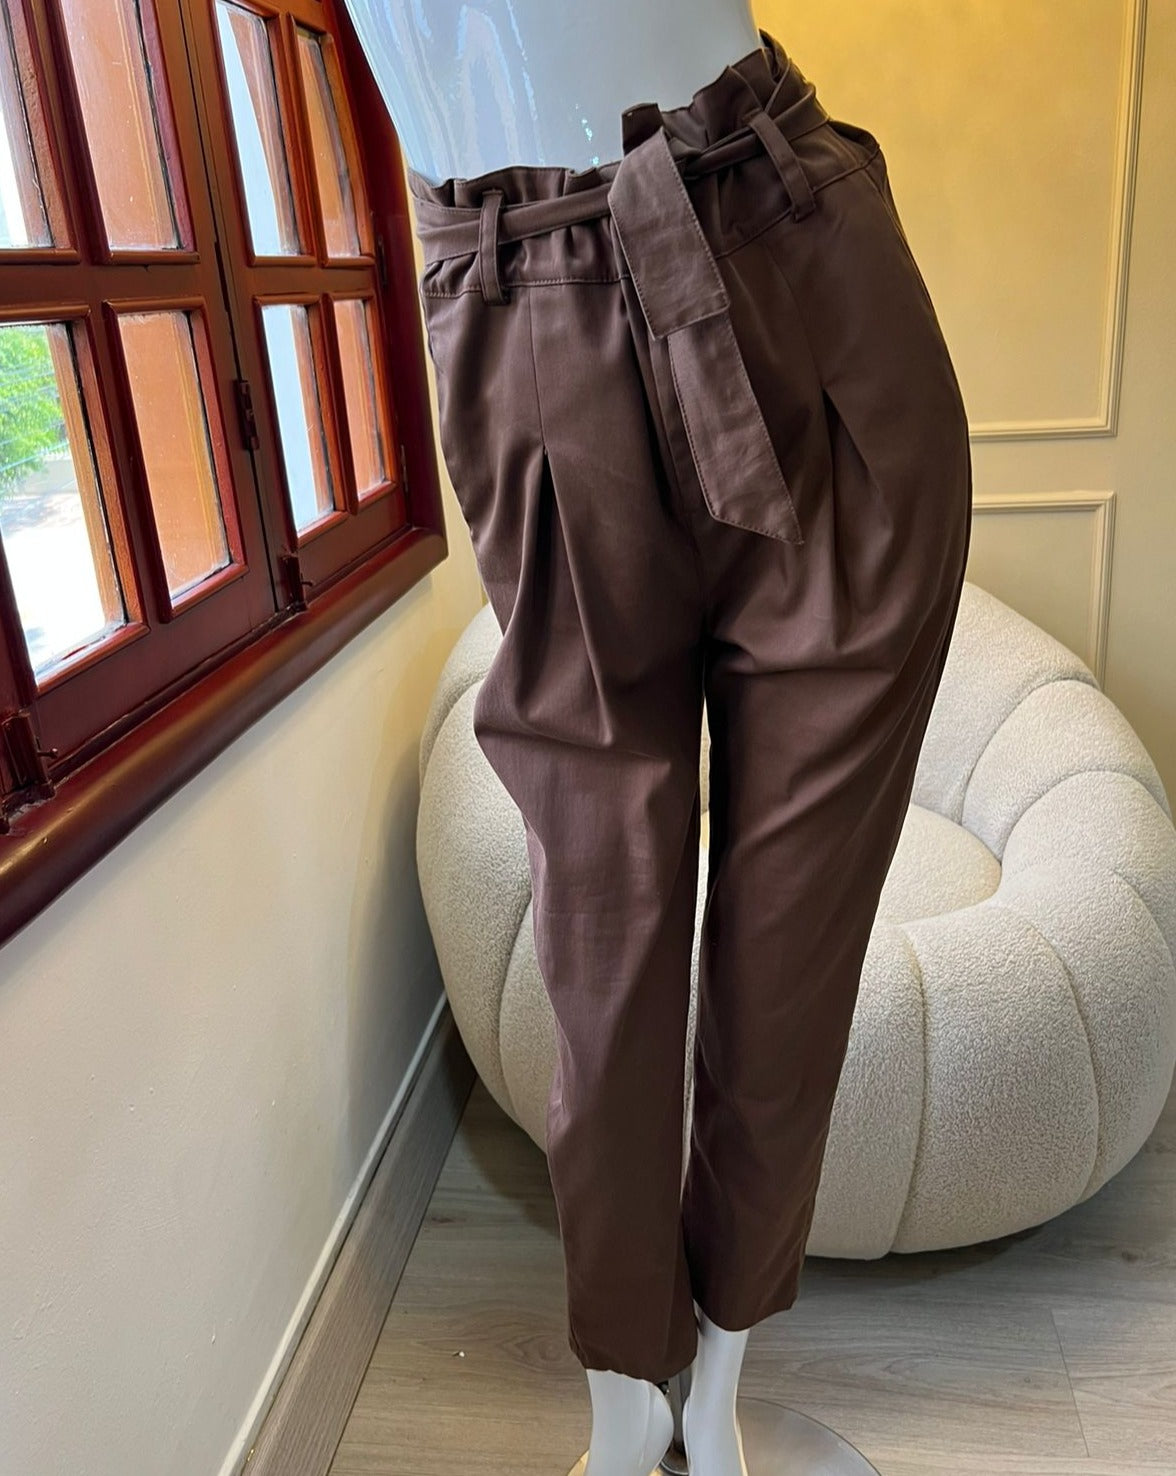 Pantalones Paper Bag color marrón para mujer, diseño moderno y cómodo, ideales para cualquier ocasión, de KIKE RODRIGUEZ.